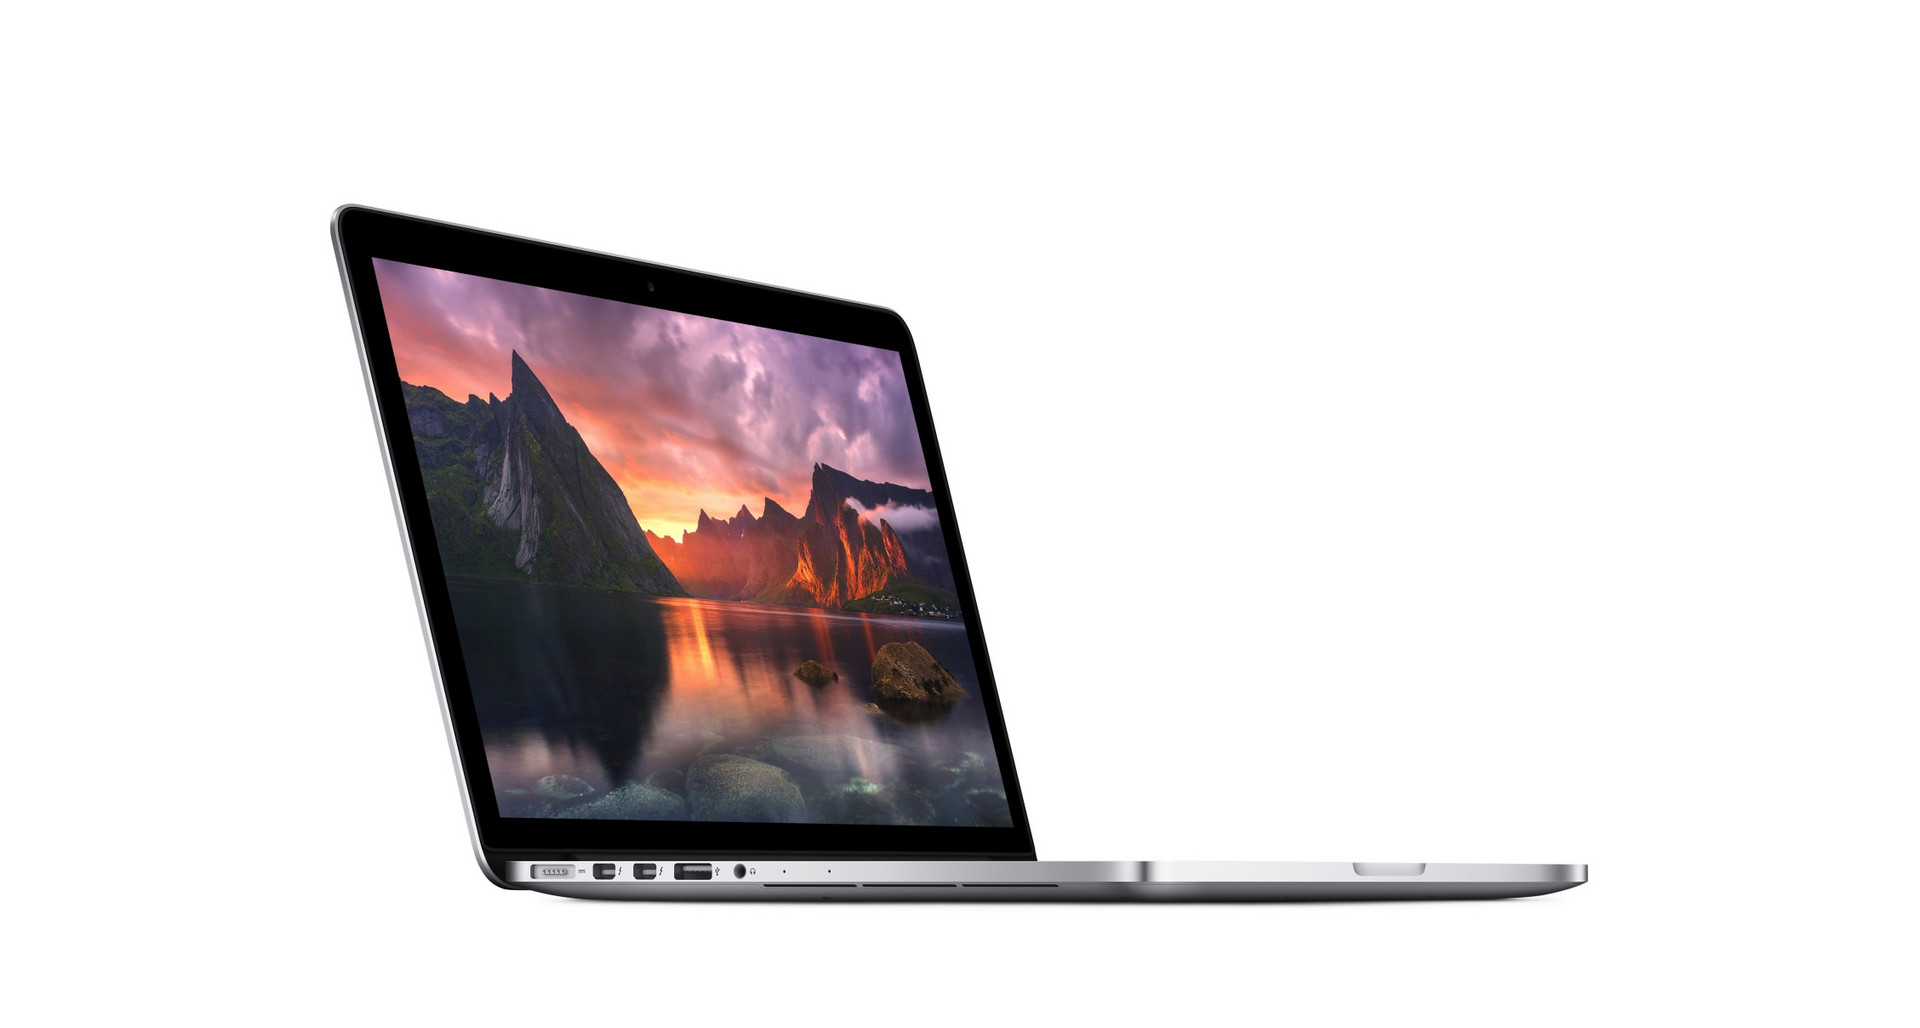 MacBook Pro 13インチ Mid 2014ノートPC